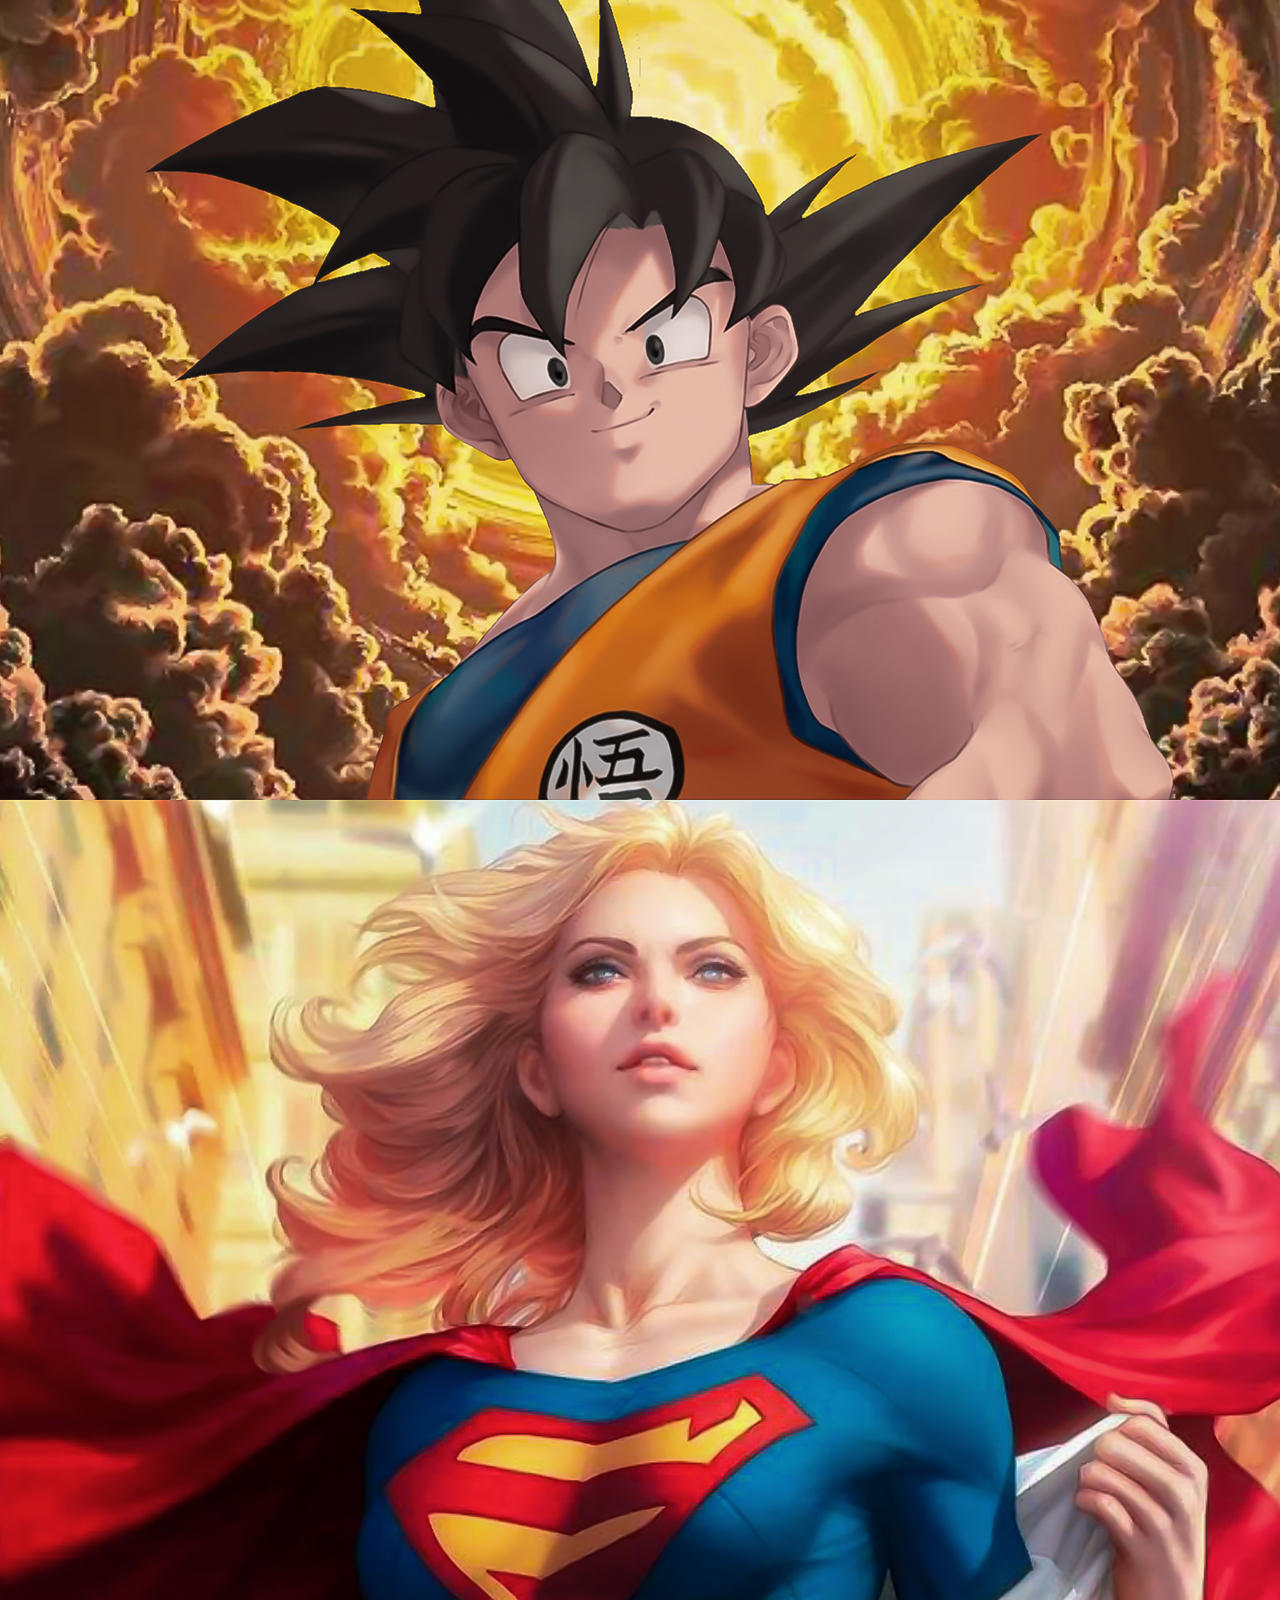 Goku and Supergirl by SatZBoom on DeviantArt